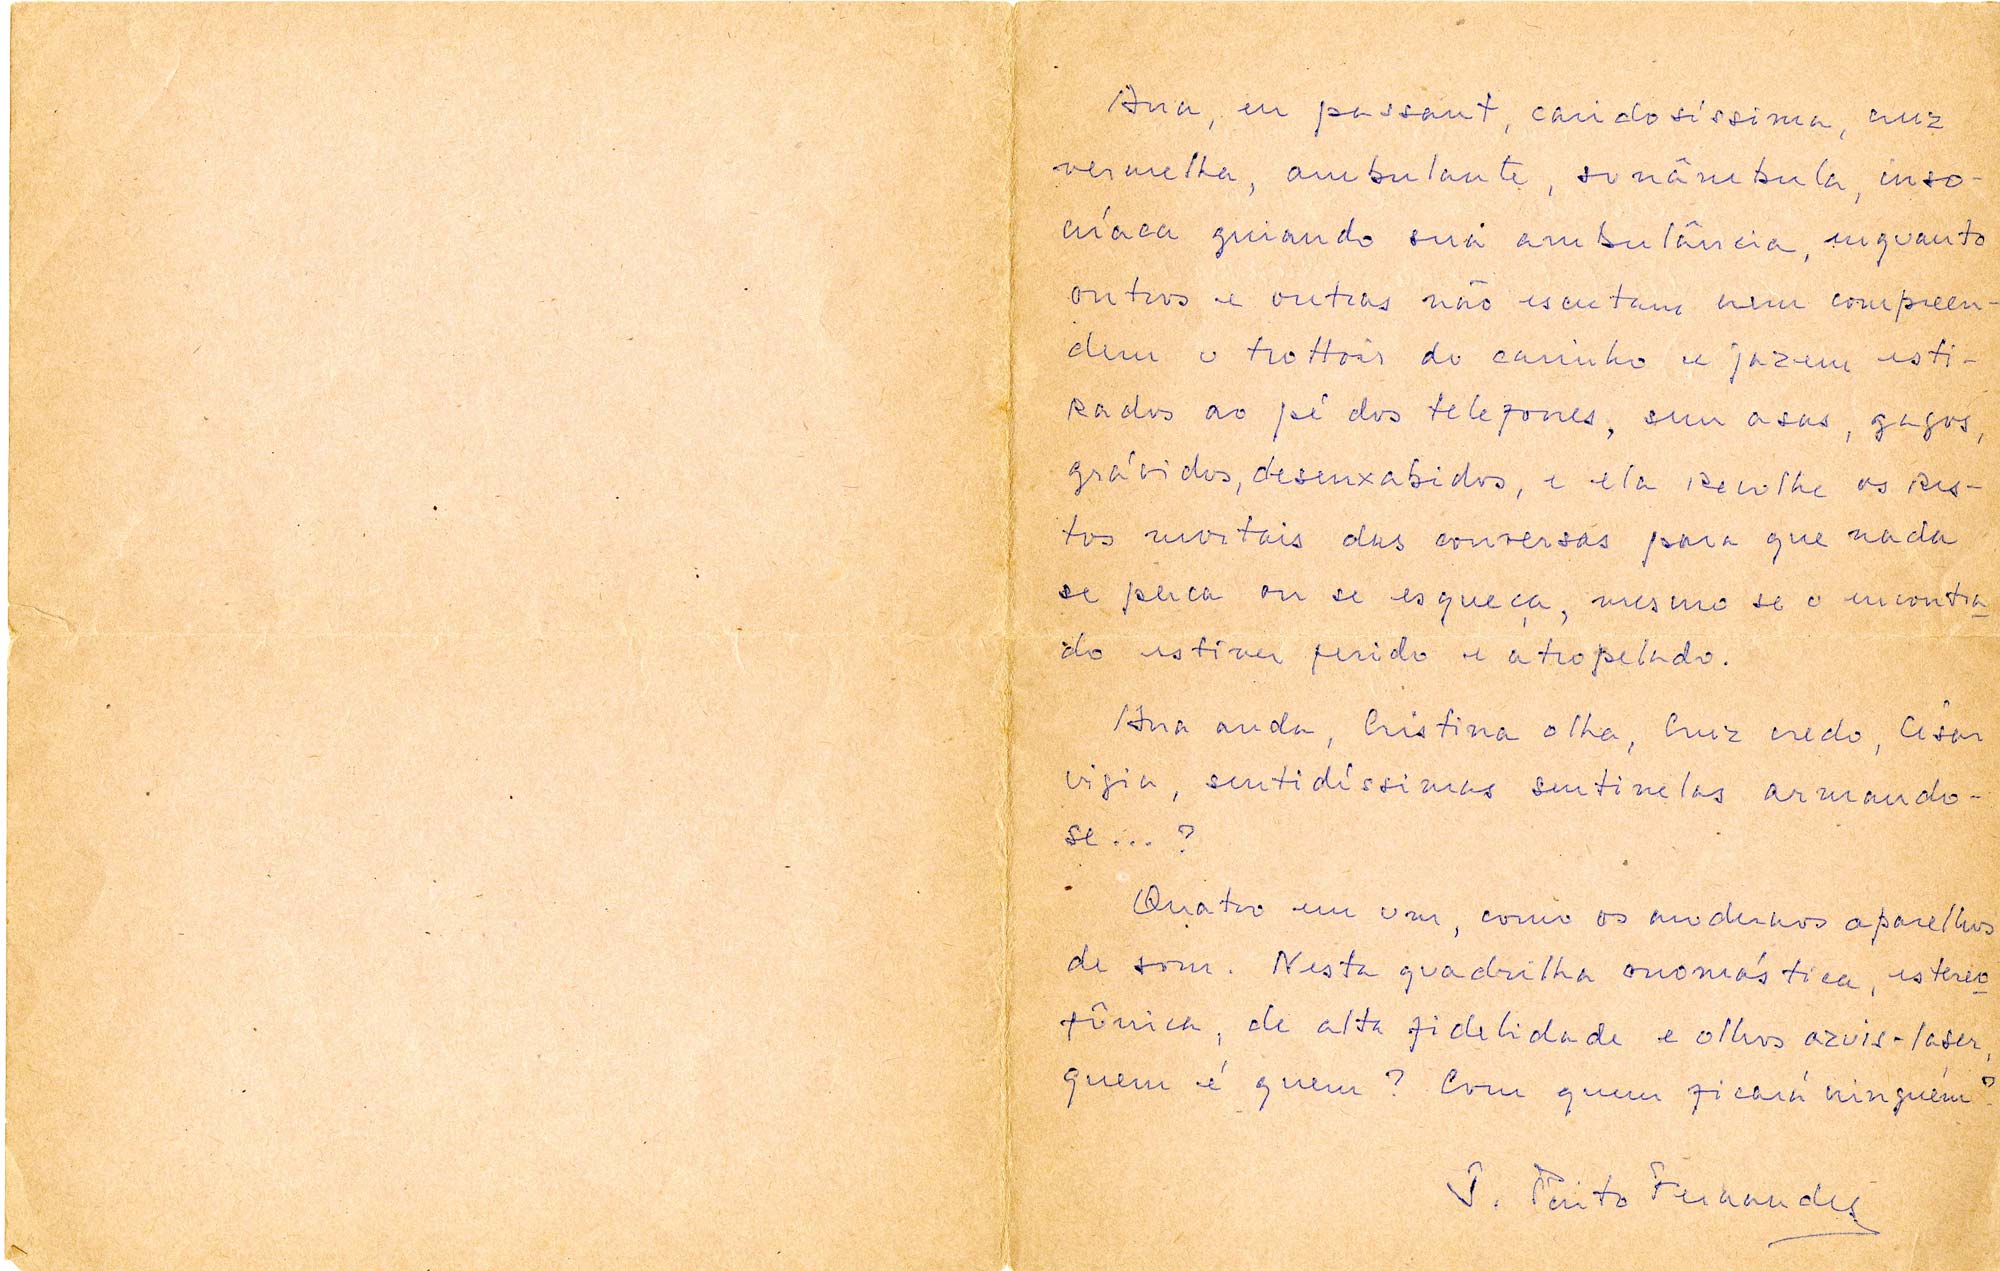 Carta de Armando Freitas Filho a Ana Cristina, 4 de janeiro de 1982. Arquivo de Ana Cristina Cesar / Acervo IMS